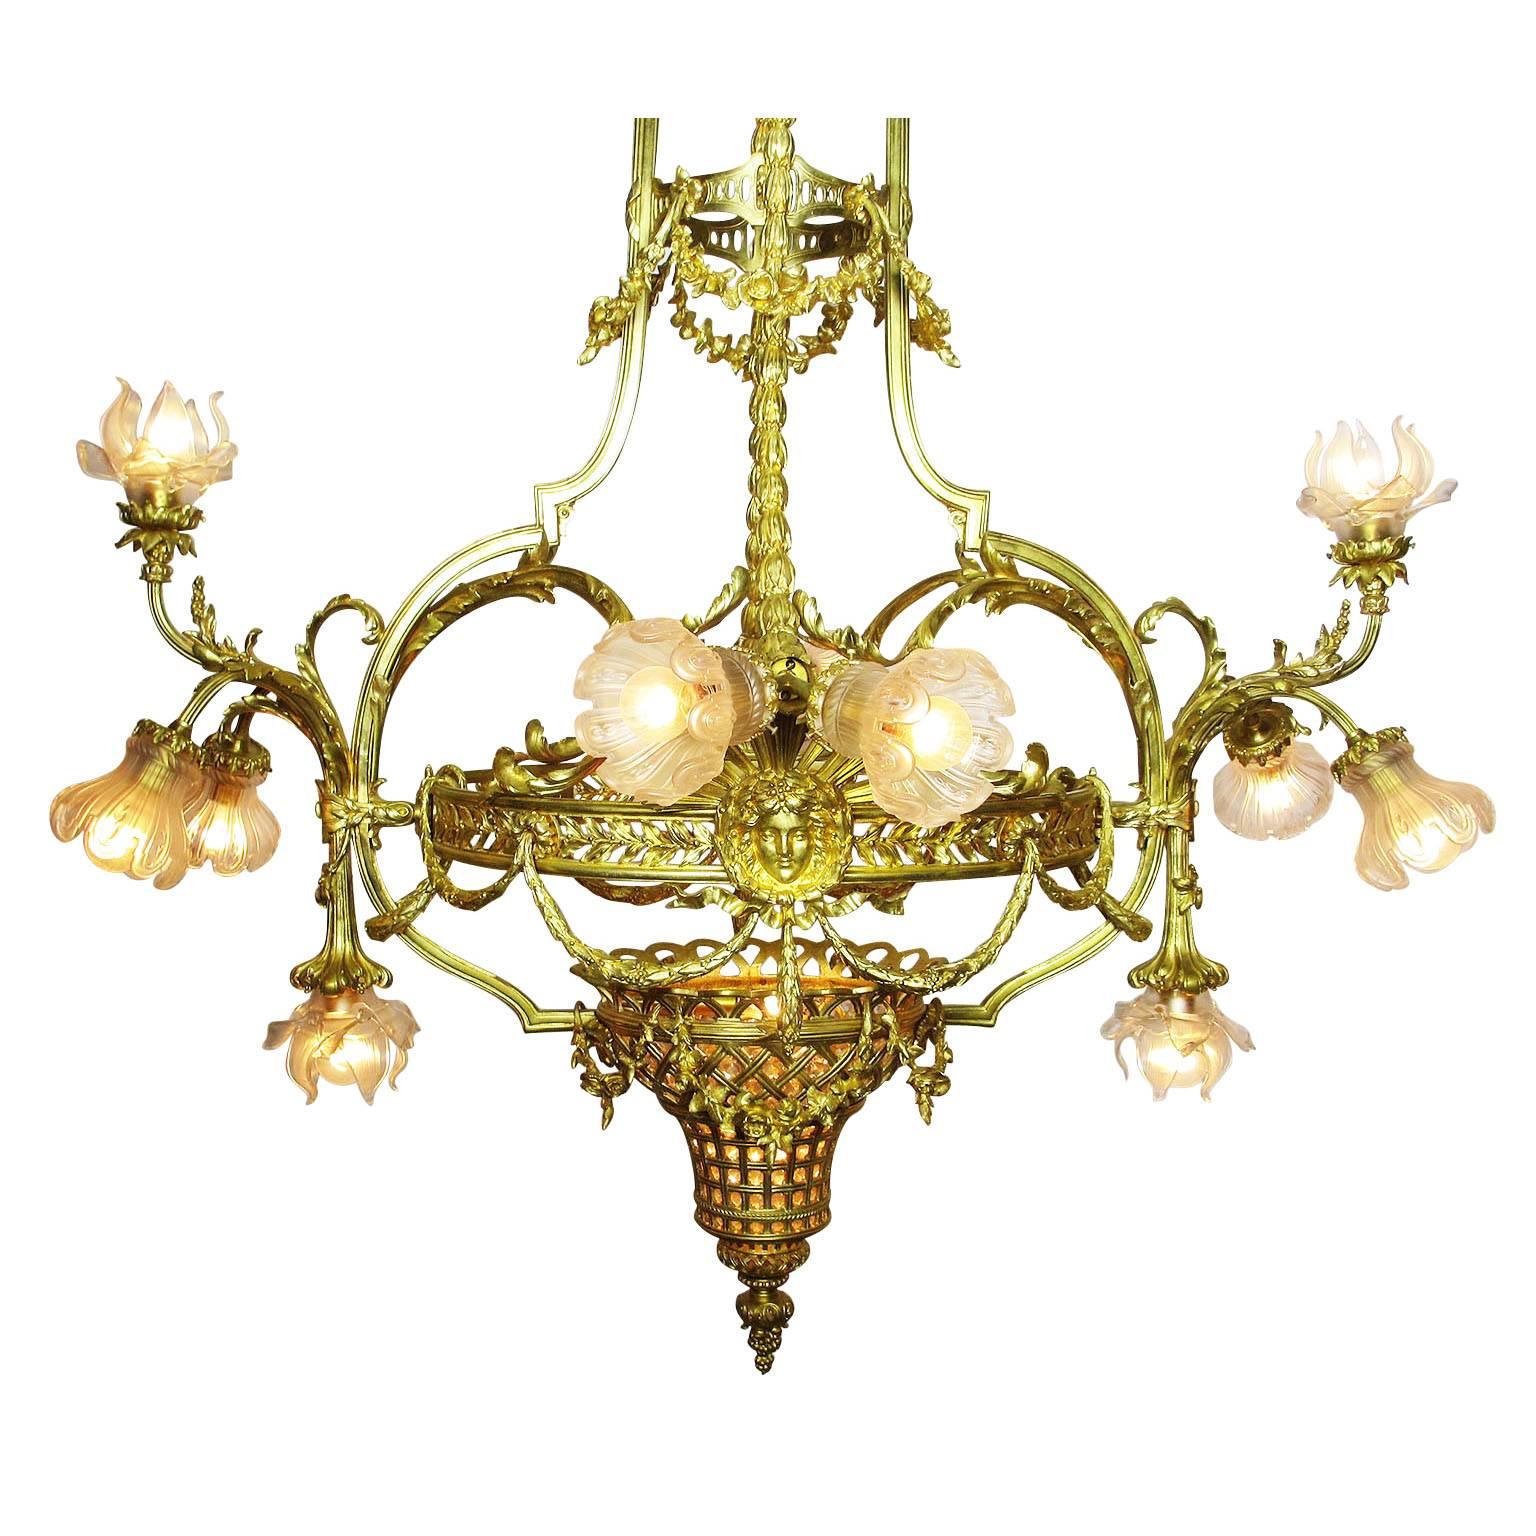 Ein sehr feiner und großer französischer Belle Epoque 19./20. Jahrhundert Louis XIV Stil Zwölf-Licht Gold-Bronze Figural Kronleuchter mit mattierten Glasschirmen. Der eiförmige Korpus mit verschnörkeltem Akanthuskranz trägt ein Medaillon, das Ludwig